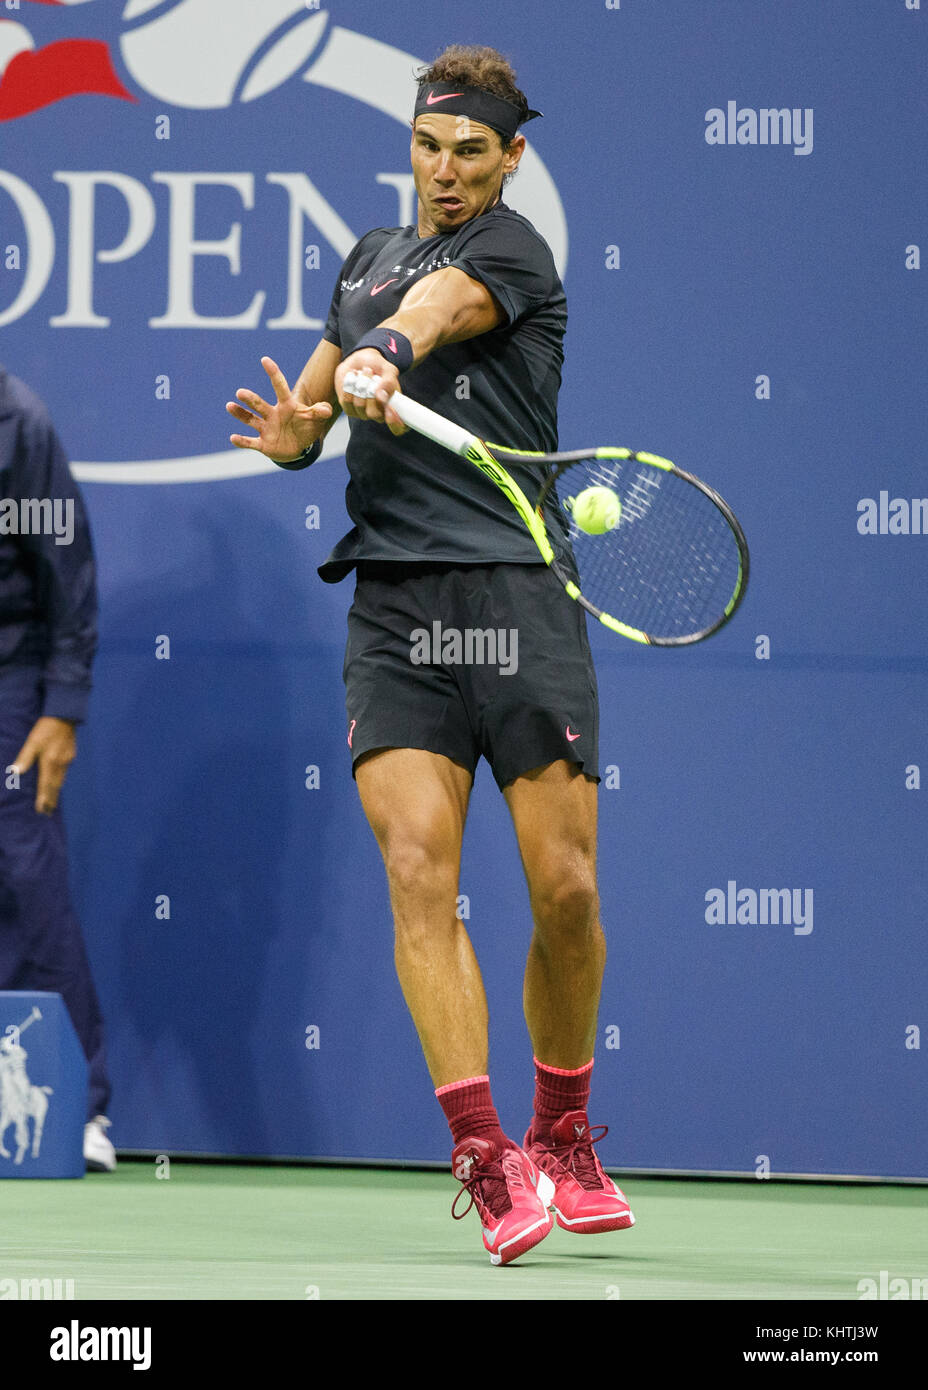 Le joueur de tennis espagnol RAFAEL NADAL (ESP) joue à l'avant-plan lors du  match des hommes en solo au championnat de tennis US Open 2017, New York  City, New York S Photo